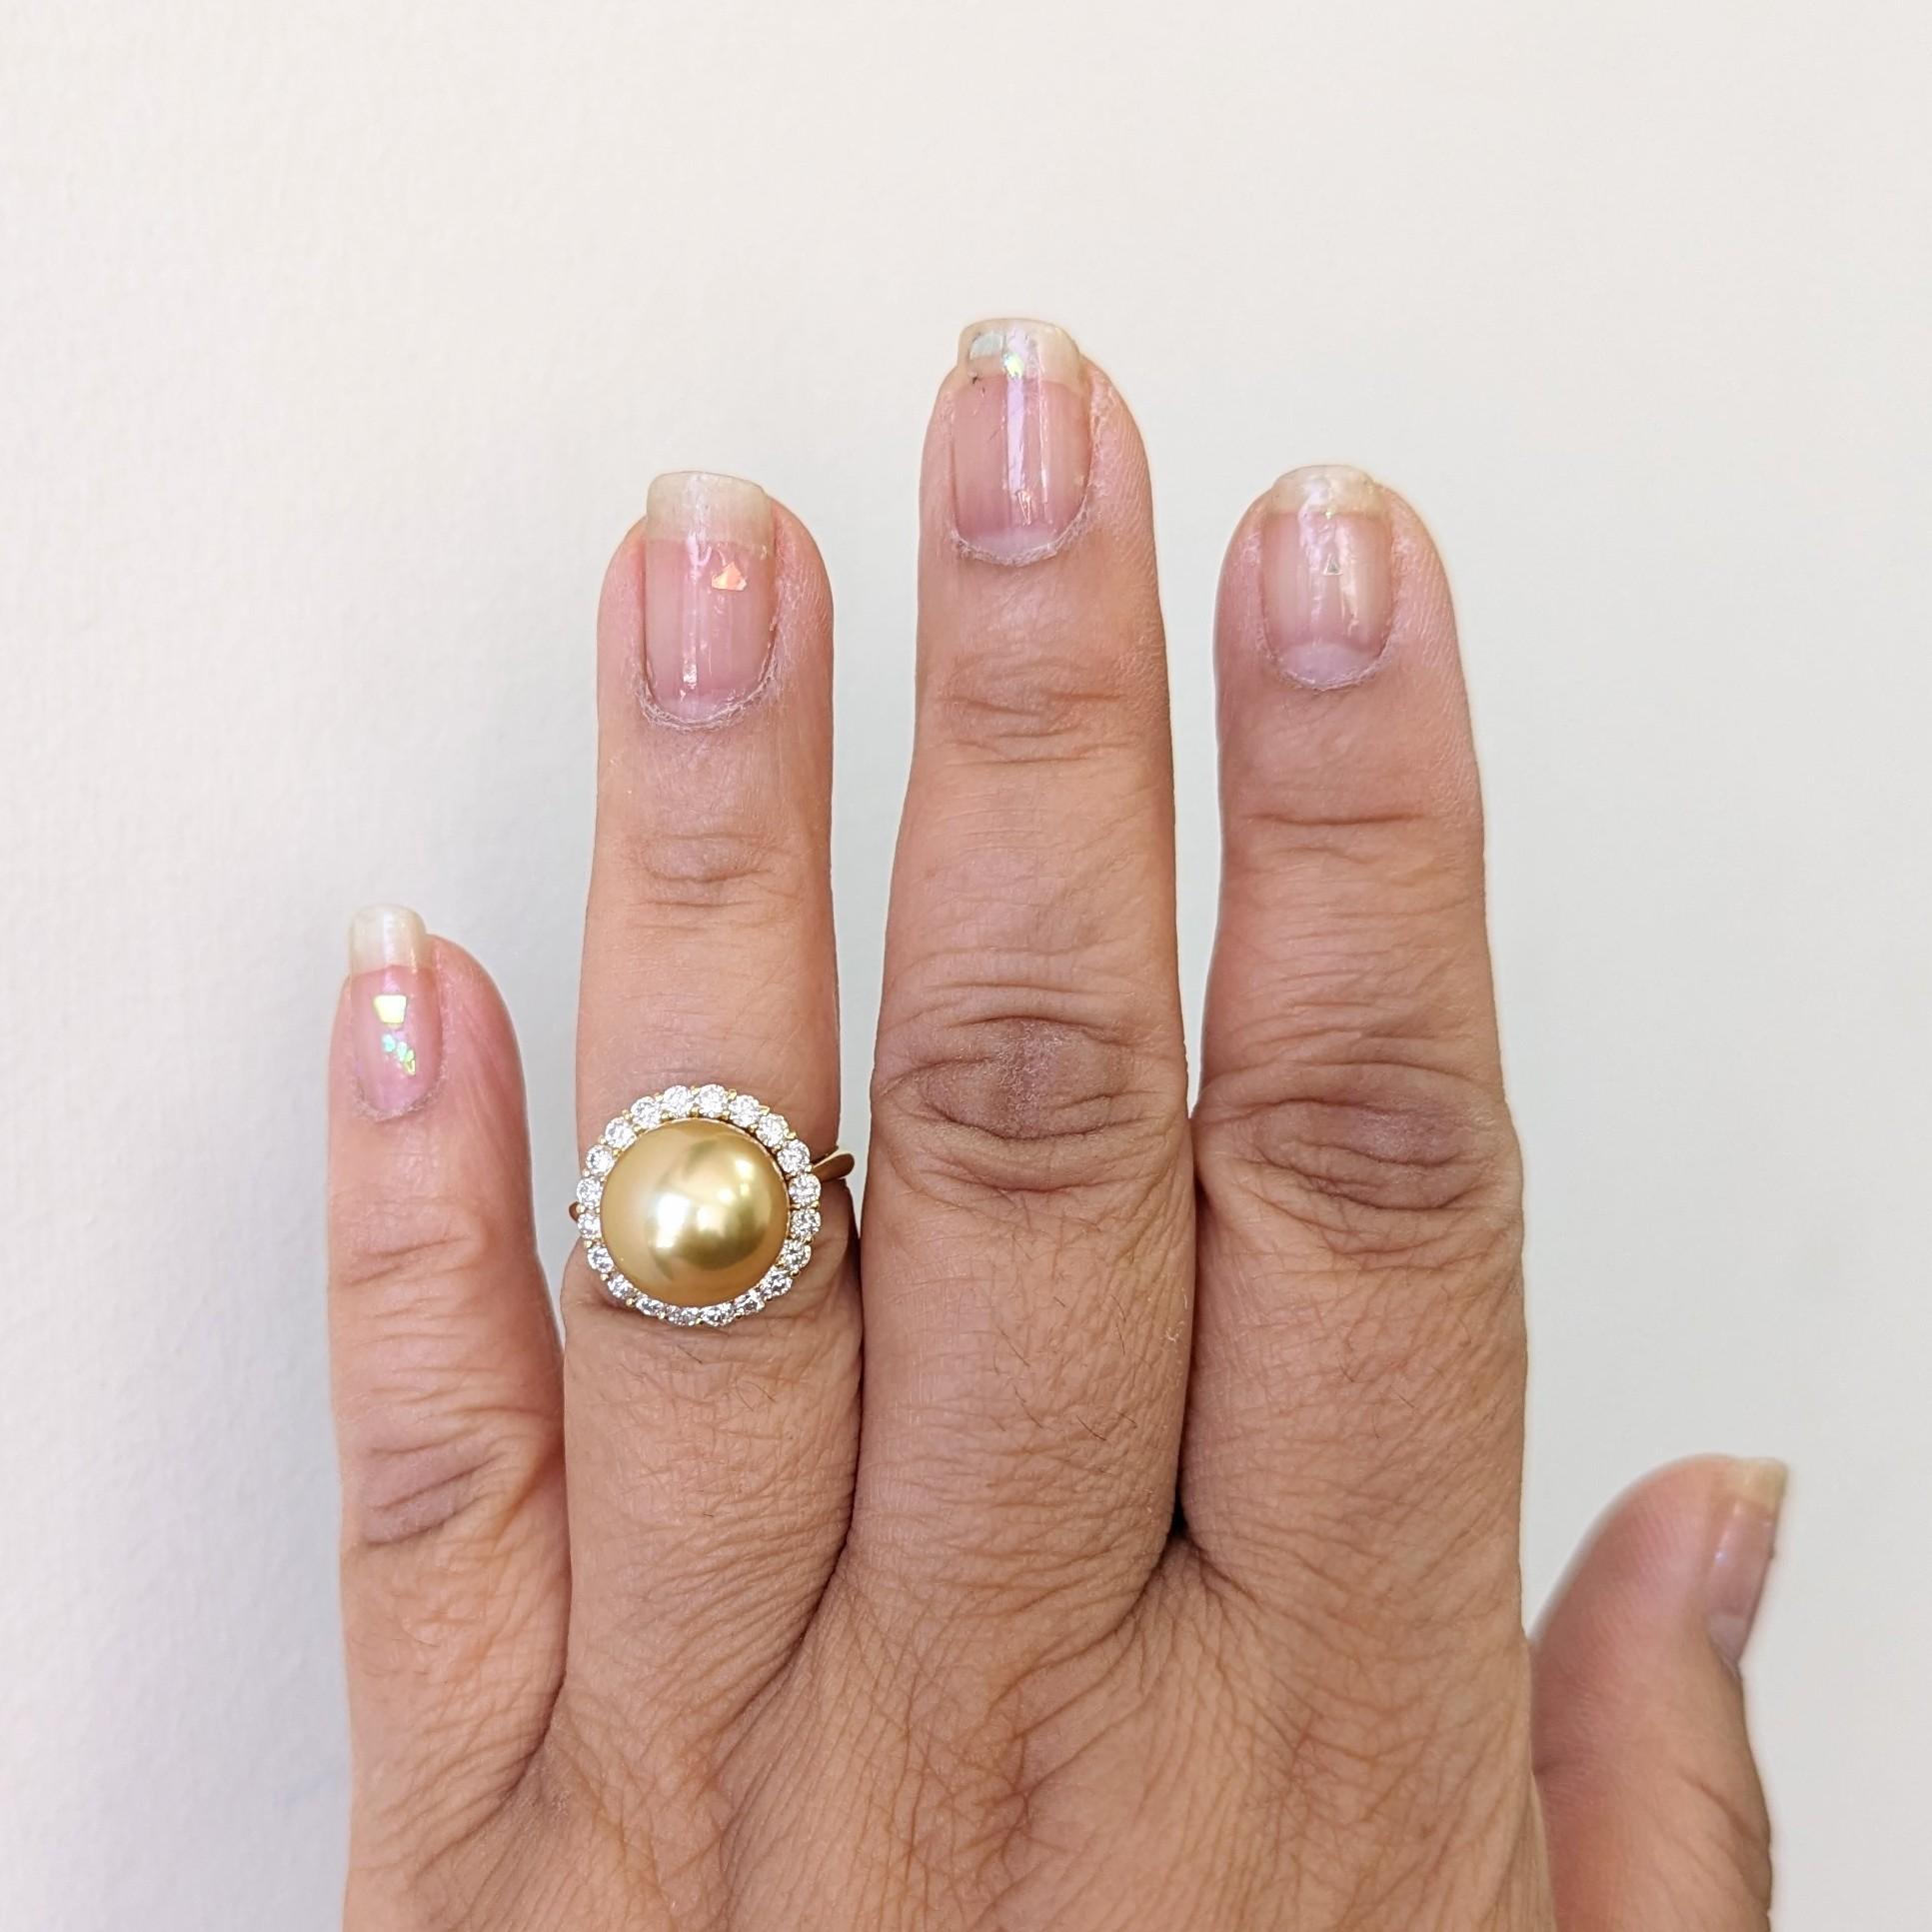 Wunderschöne große runde goldene Perle mit 0,70 ct. weißen runden Diamanten von guter Qualität.  Handgefertigt in 18k Gelbgold.  Ringgröße 6,25.